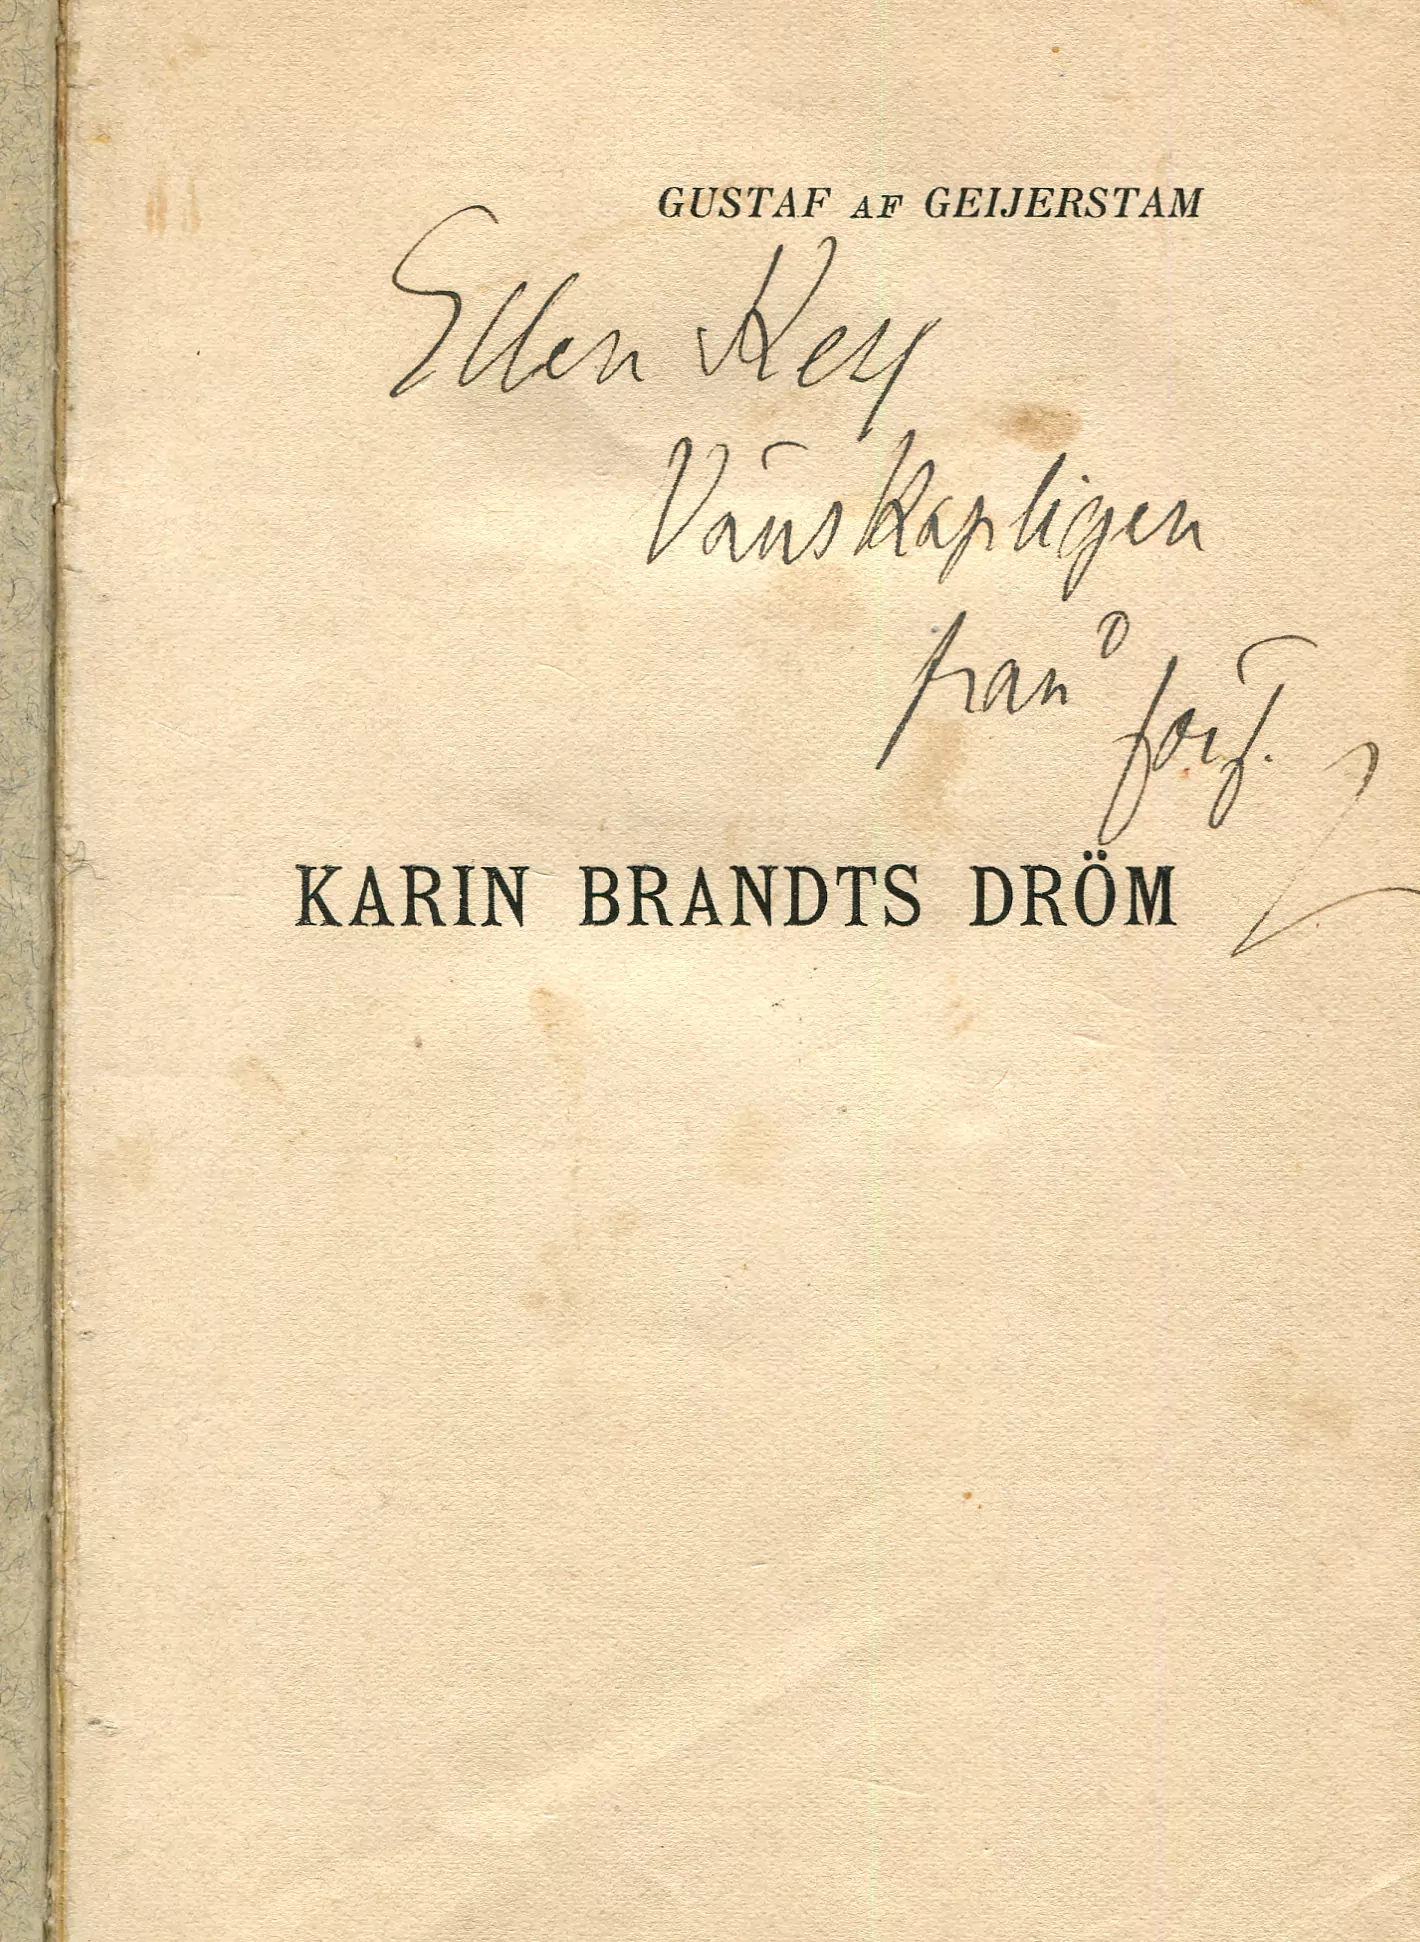 Karin Brandts dröm , Stockholm 1904